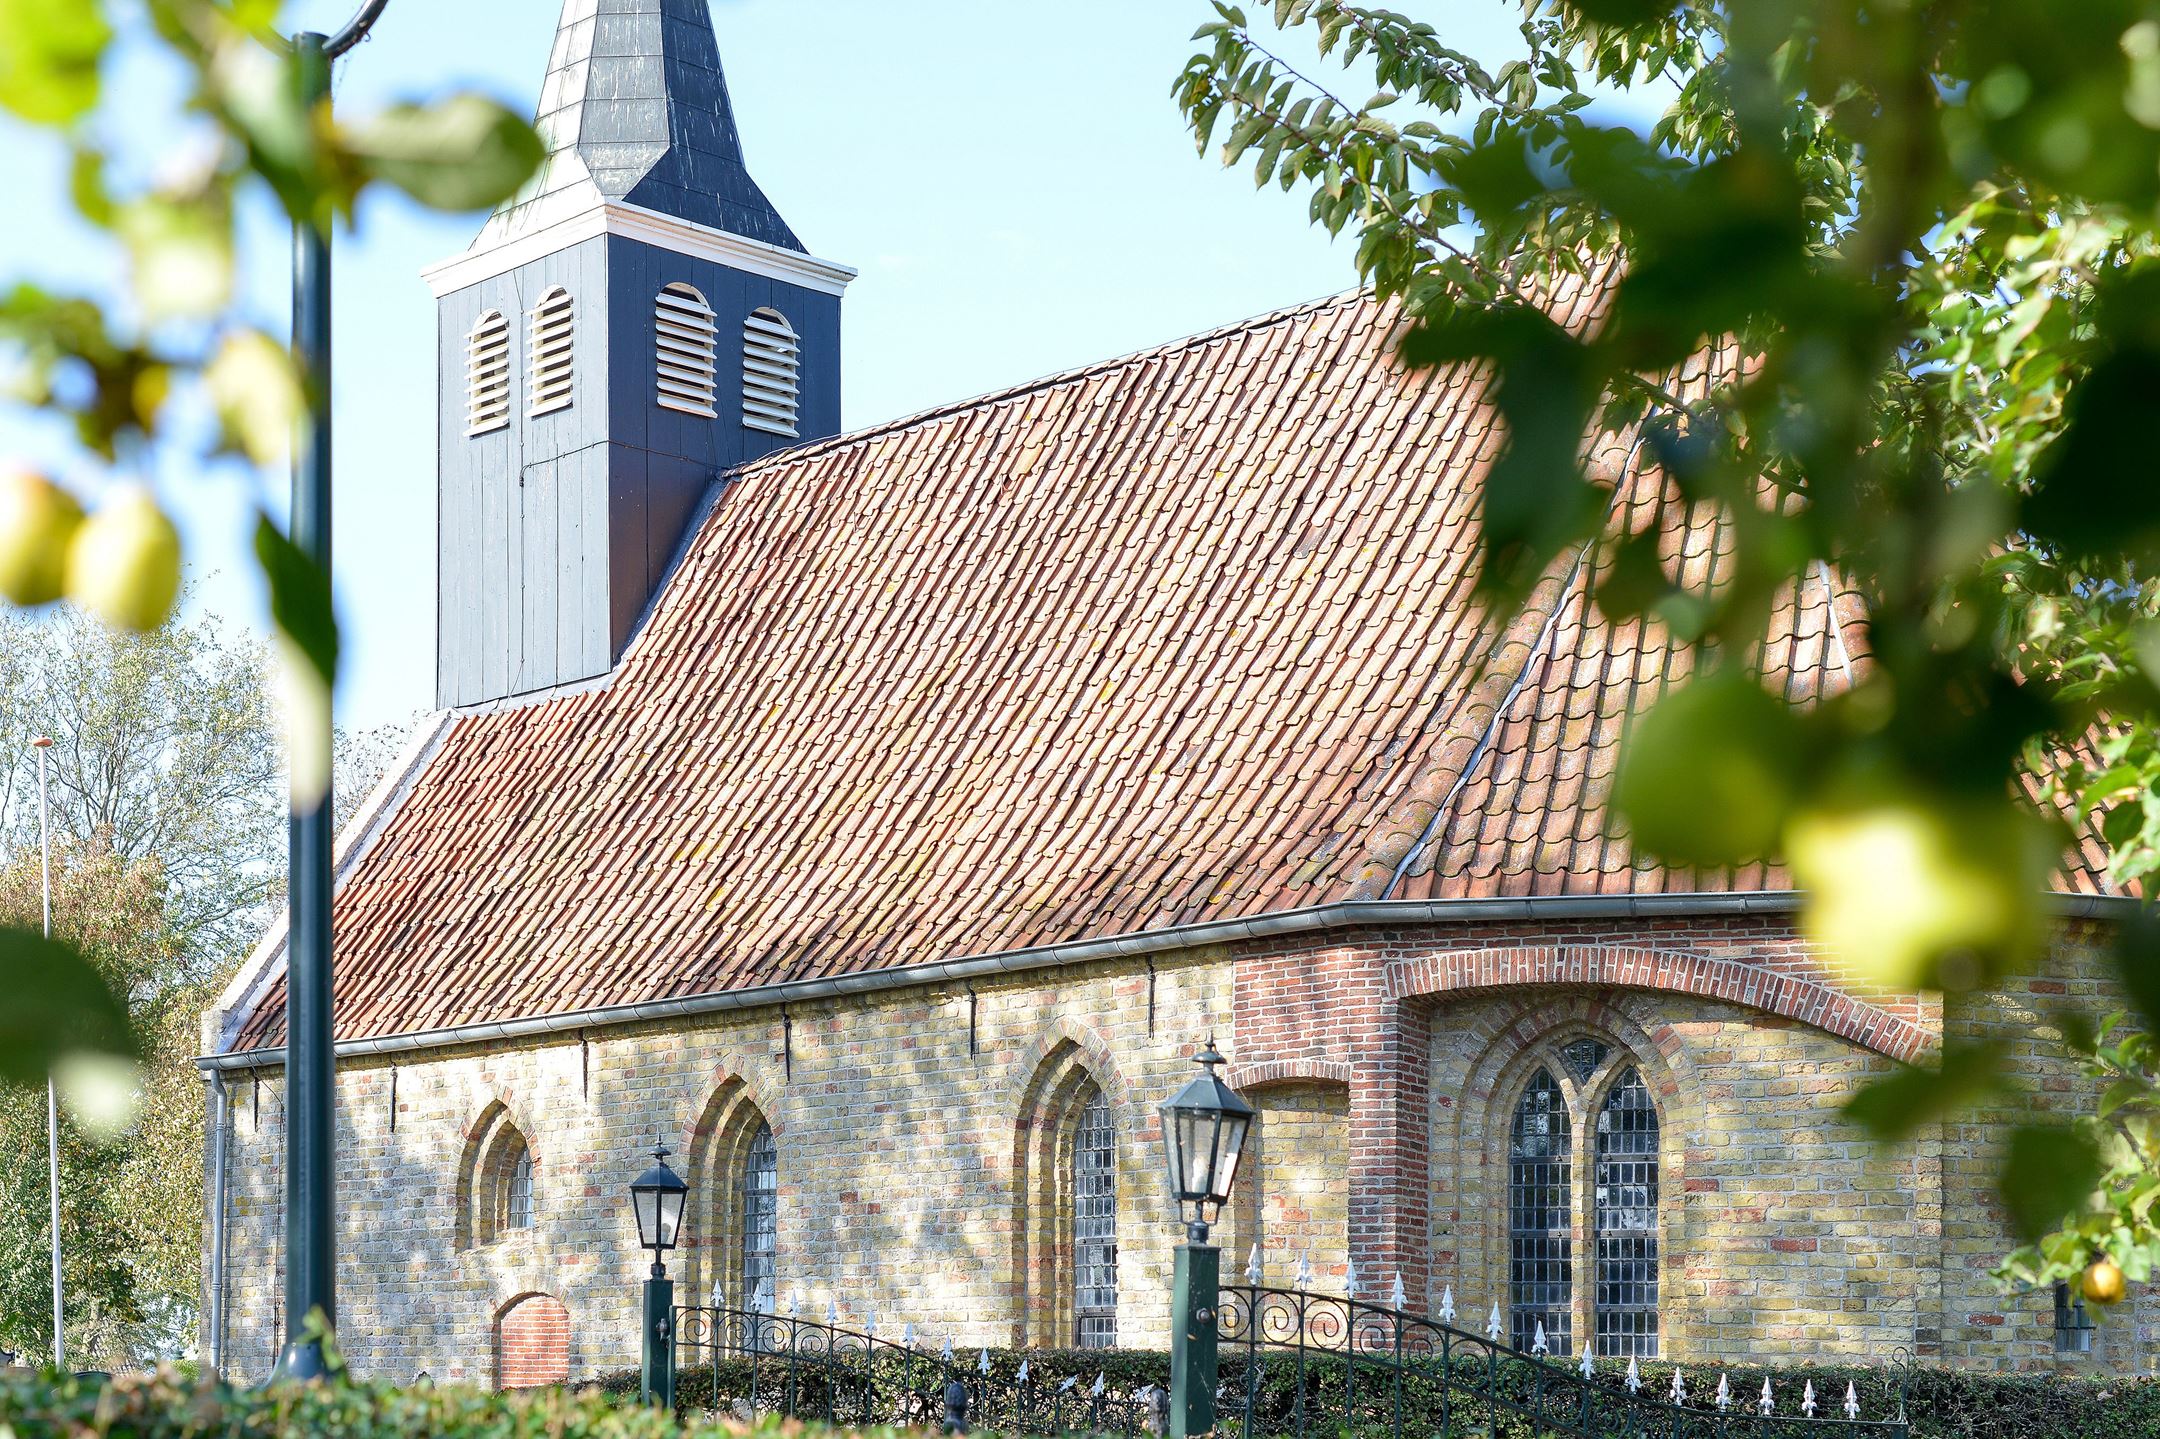 Het 13de eeuwse kerkje gezien vanaf Nynke's Pleats